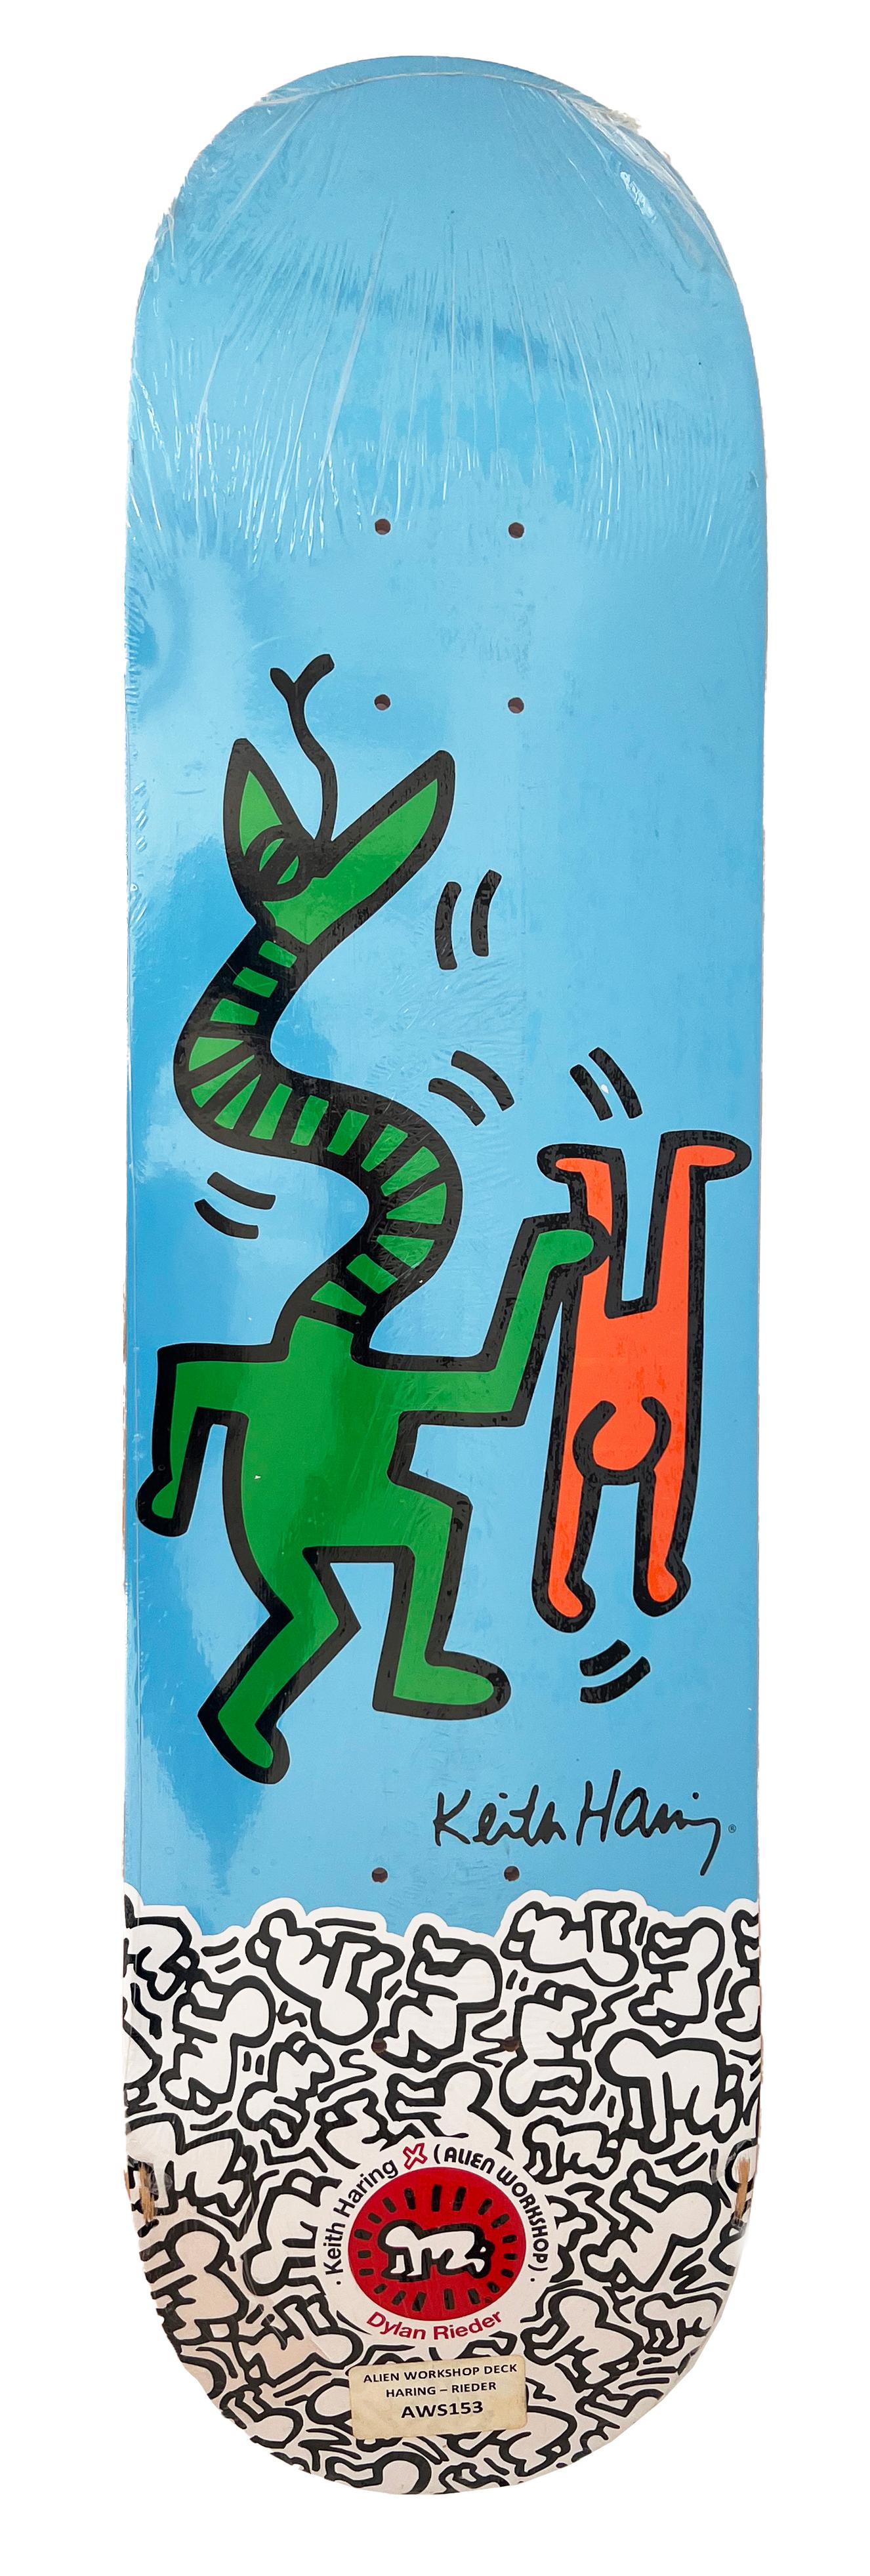 Keith Haring Skateboard Deck Satz von 2 Werken:
Seltenes, vergriffenes Keith Haring Skateboard Deck Set mit einigen der ikonischsten Bilder des Künstlers. Diese Decks entstanden ca. 2012 als Ergebnis der Collaboration zwischen Alien Workshop und der